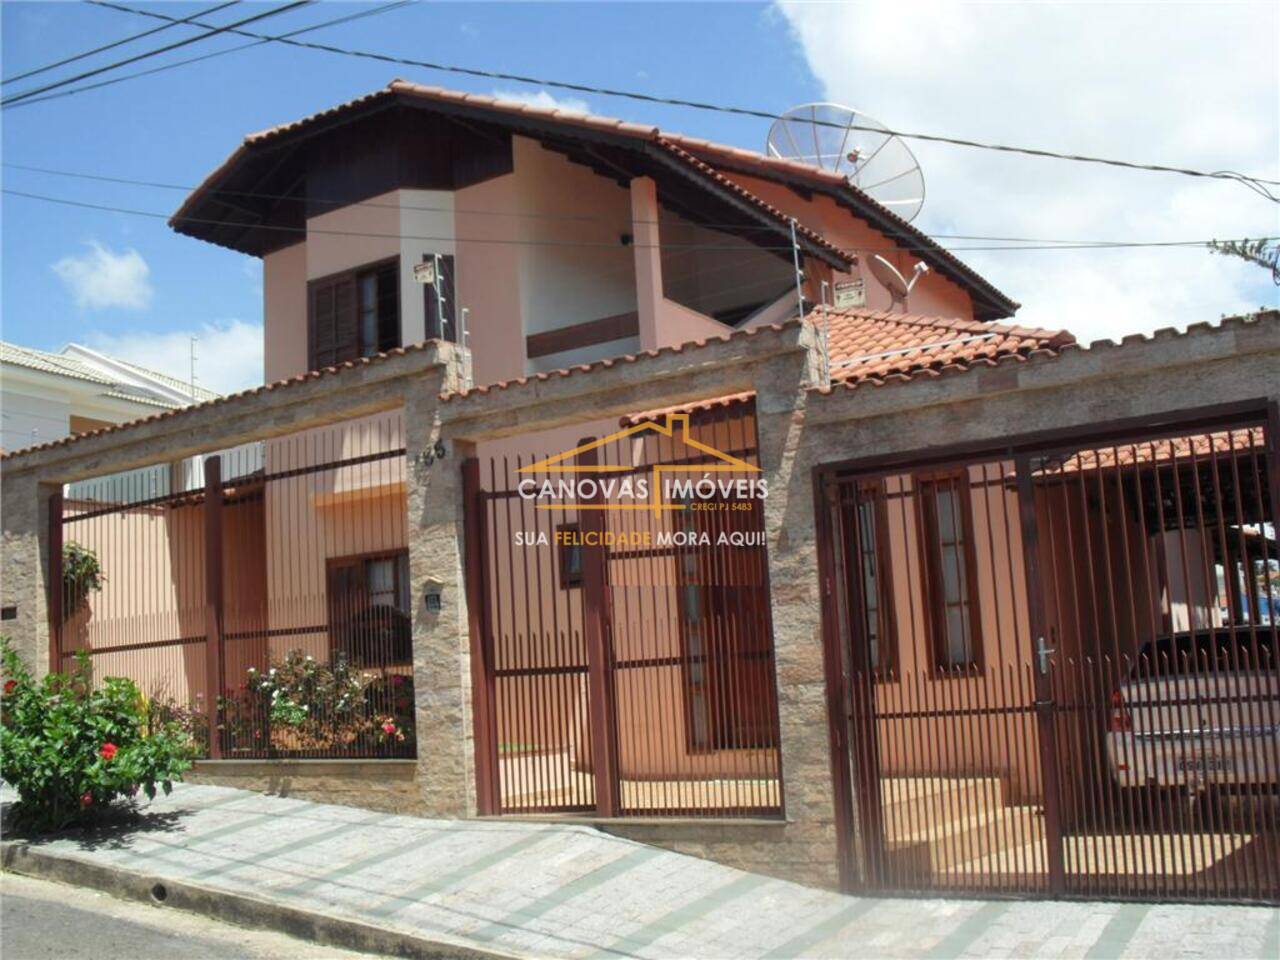 Casa Pousada dos Campos, Pouso Alegre - MG